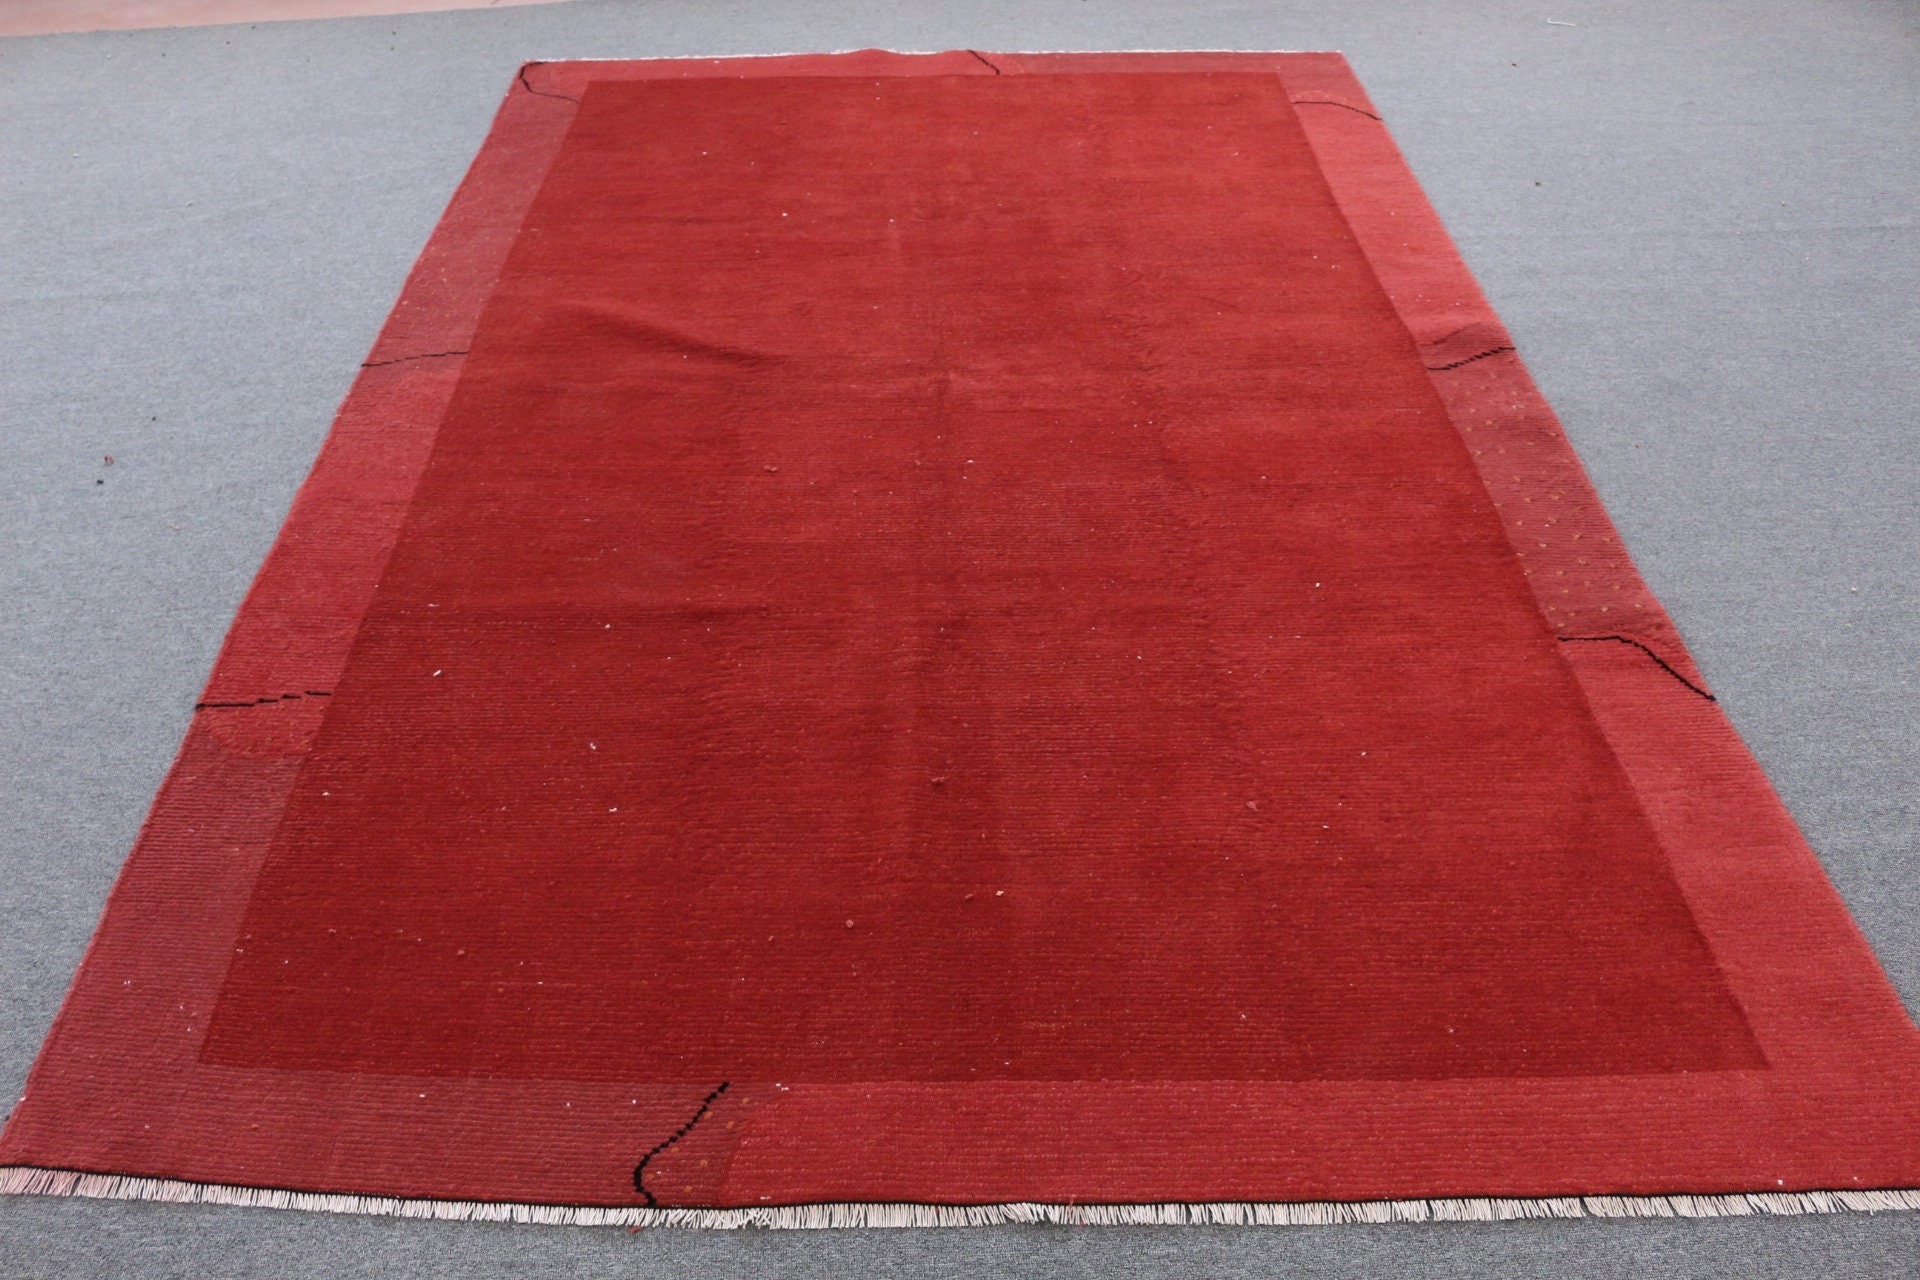 Red Bedroom Rug, Oushak Rug, Living Room Rug, Dining Room Rug, Anatolian Rug, Vintage Rugs, 6.2x9.5 ft Large Rug, Turkish Rug, Dorm Rug